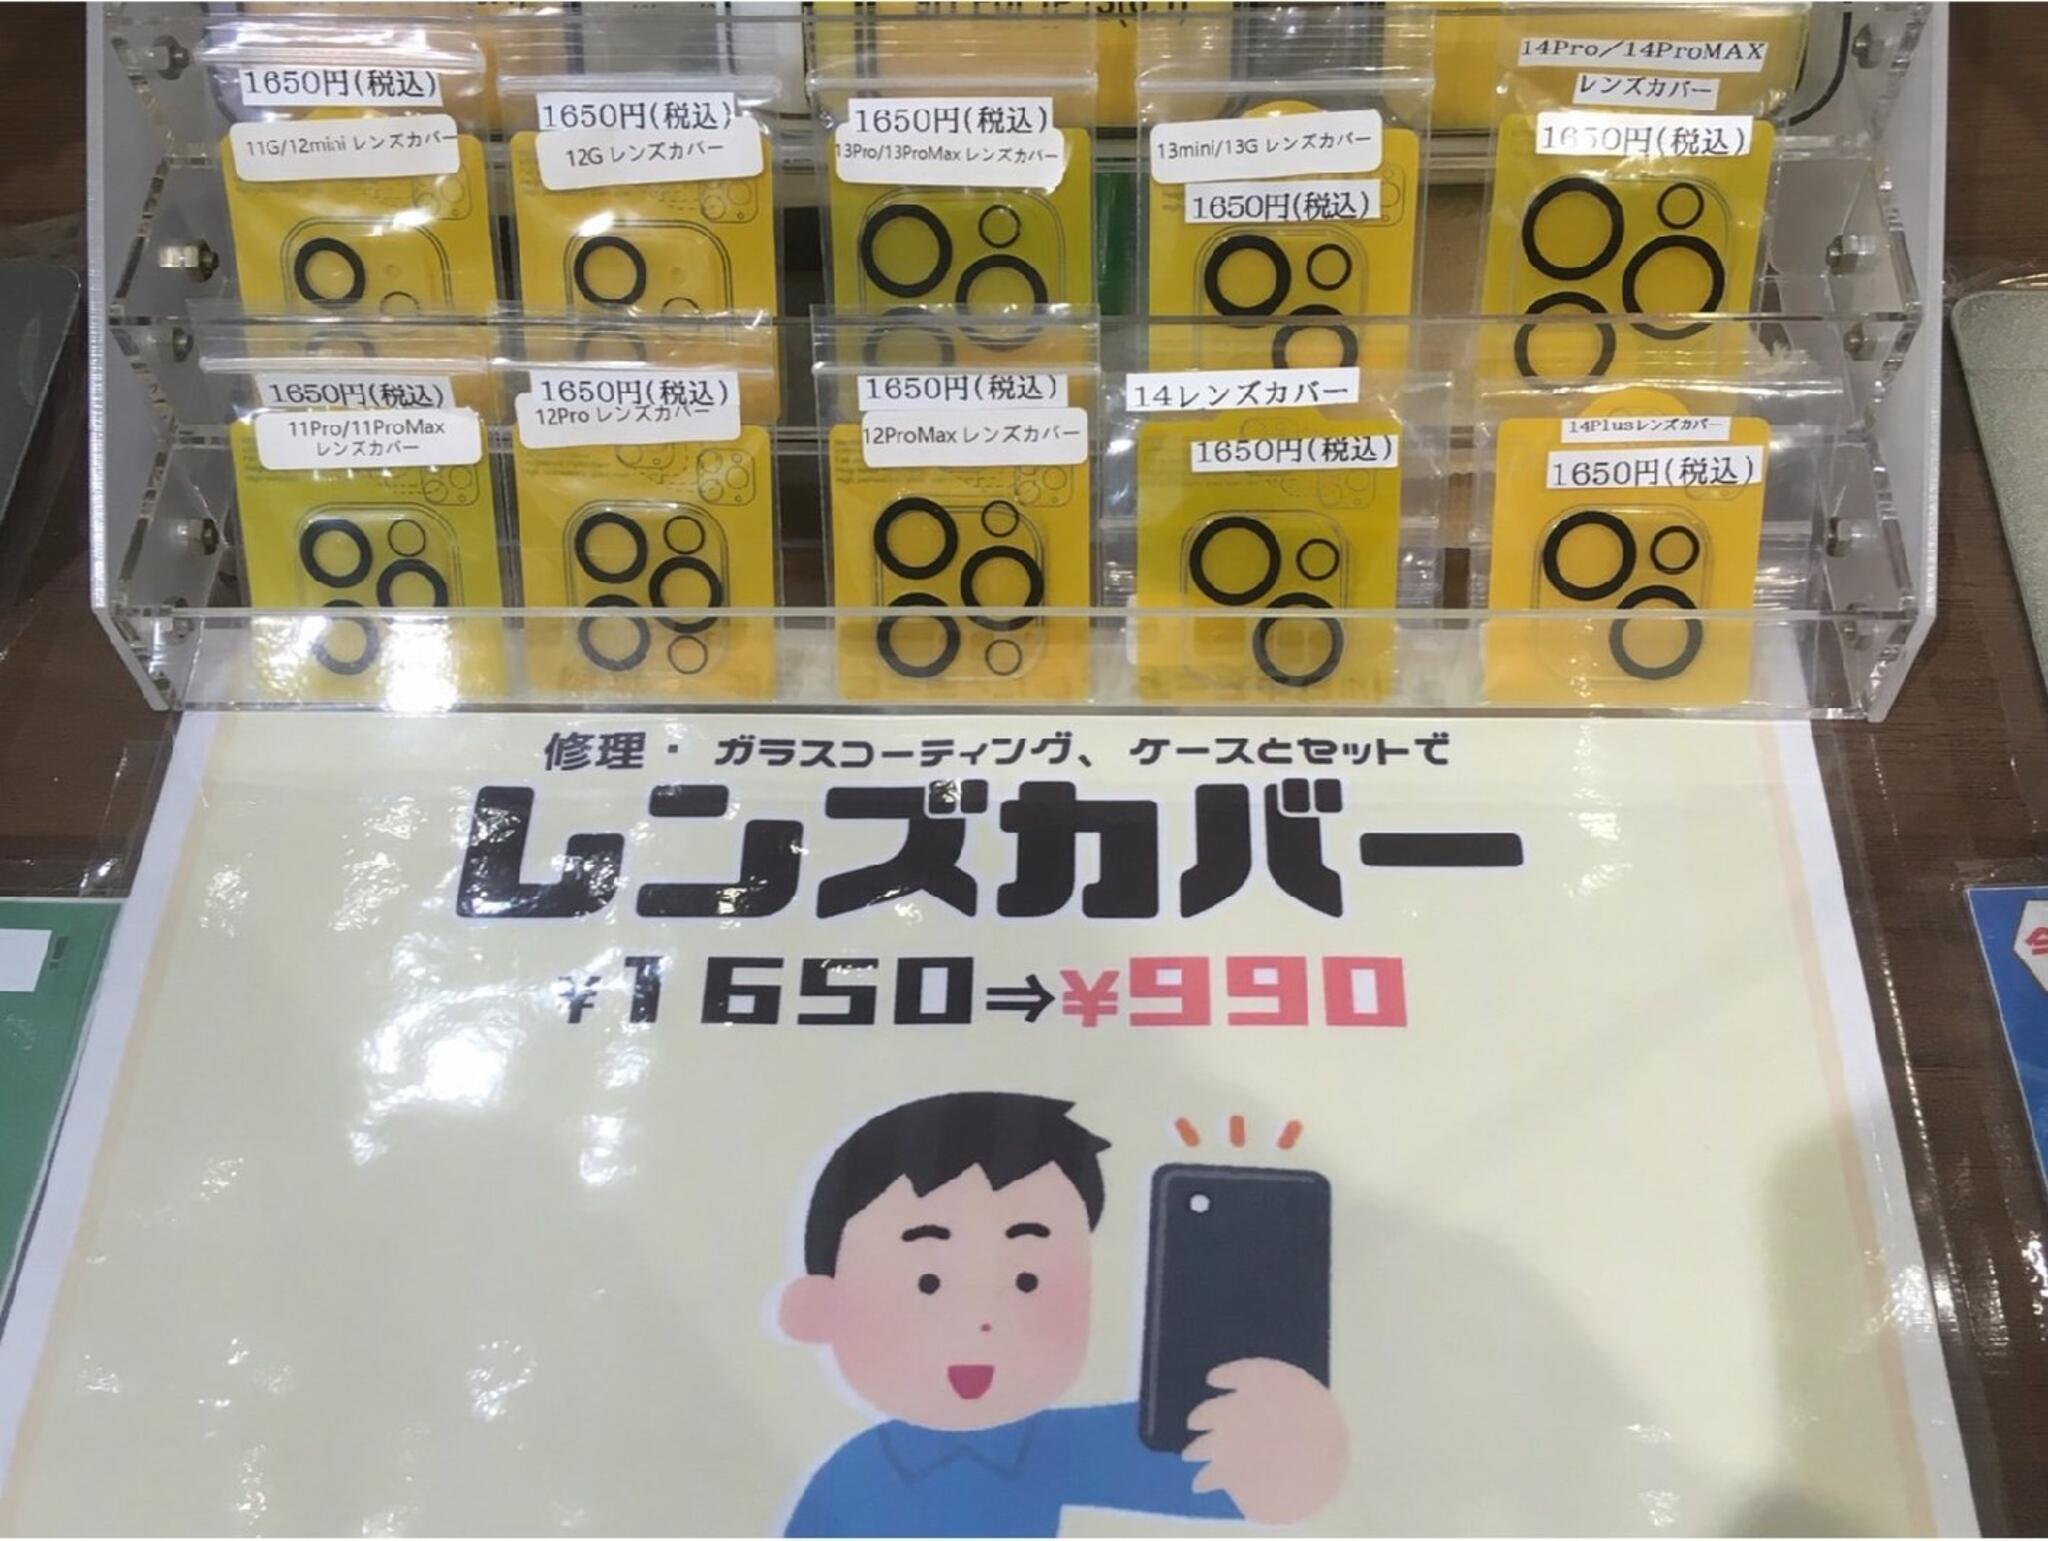 iPhone・iPad・Switch修理店 スマートクール イオンモール広島祇園店からのお知らせ(iPhone11シリーズ以降のレンズカバー販売しています)に関する写真